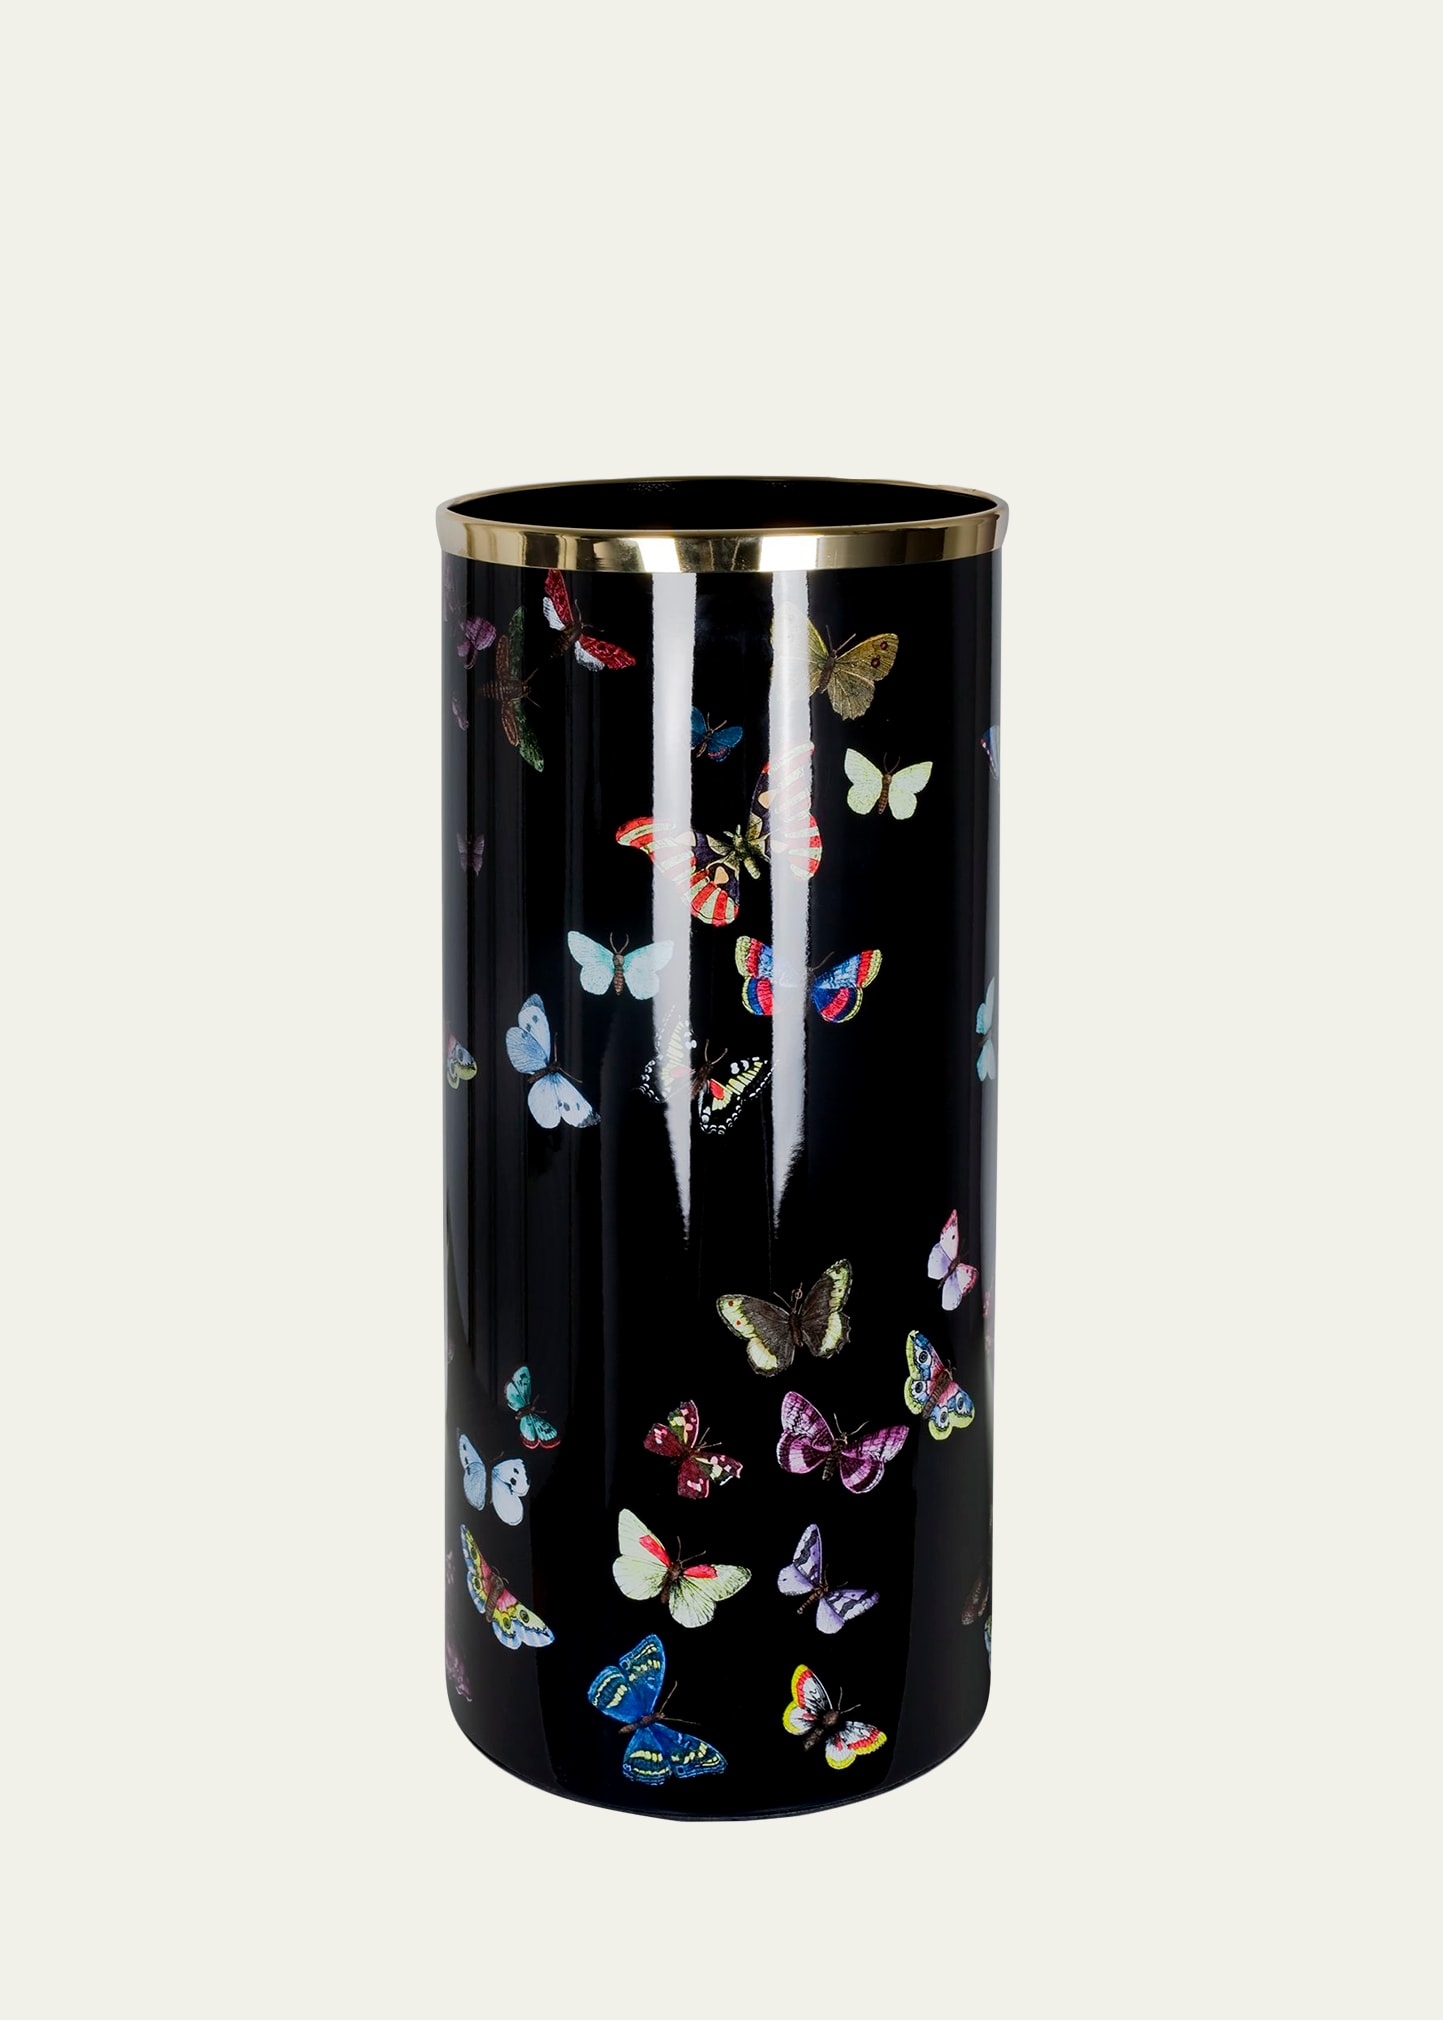 Farfalle colour butterflies umbrella stand